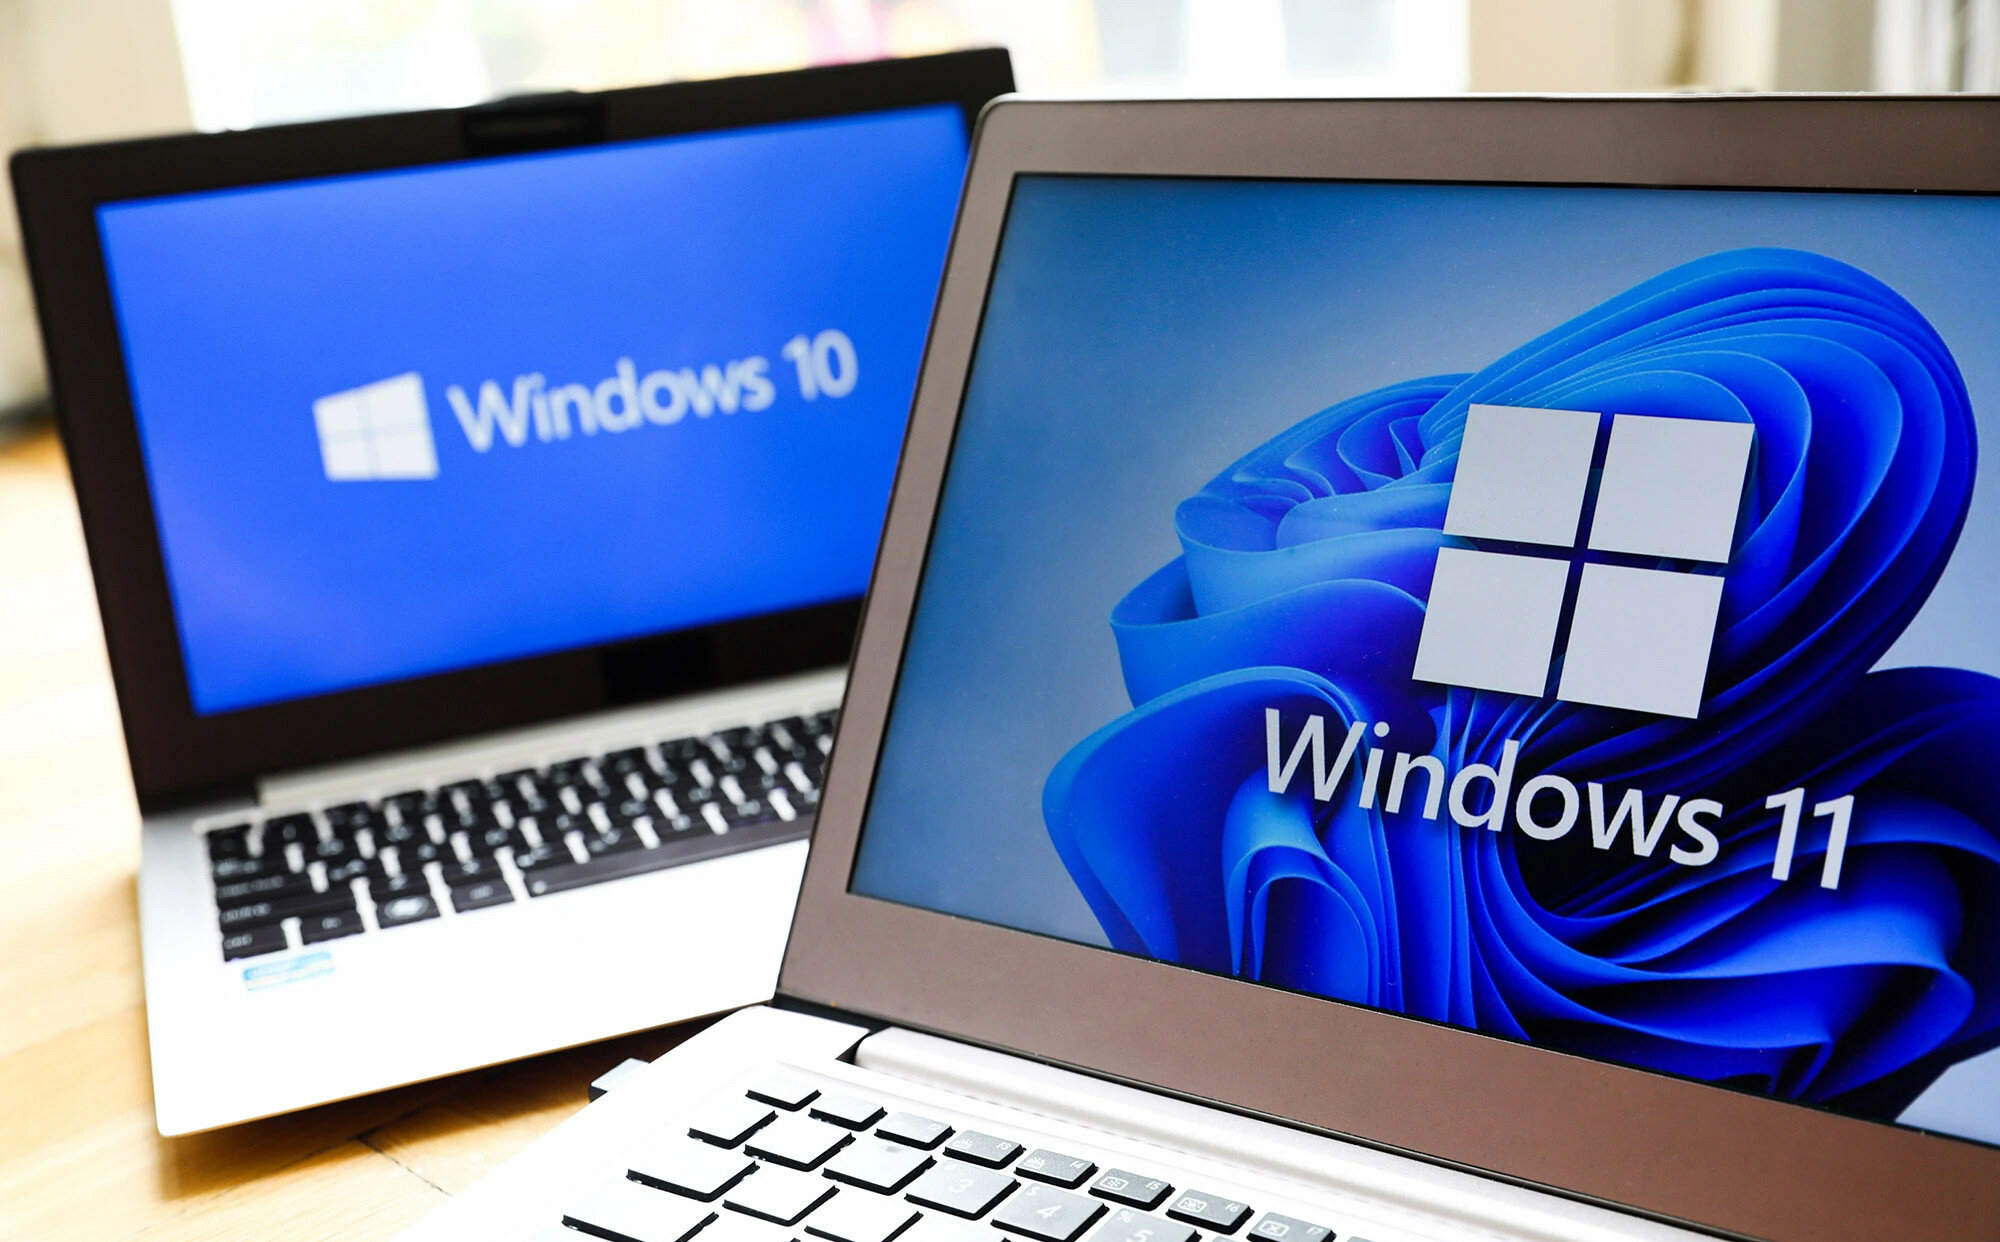 Полезная функция из Windows 11 появилась в Windows 10. Это хитрая защита от коллег